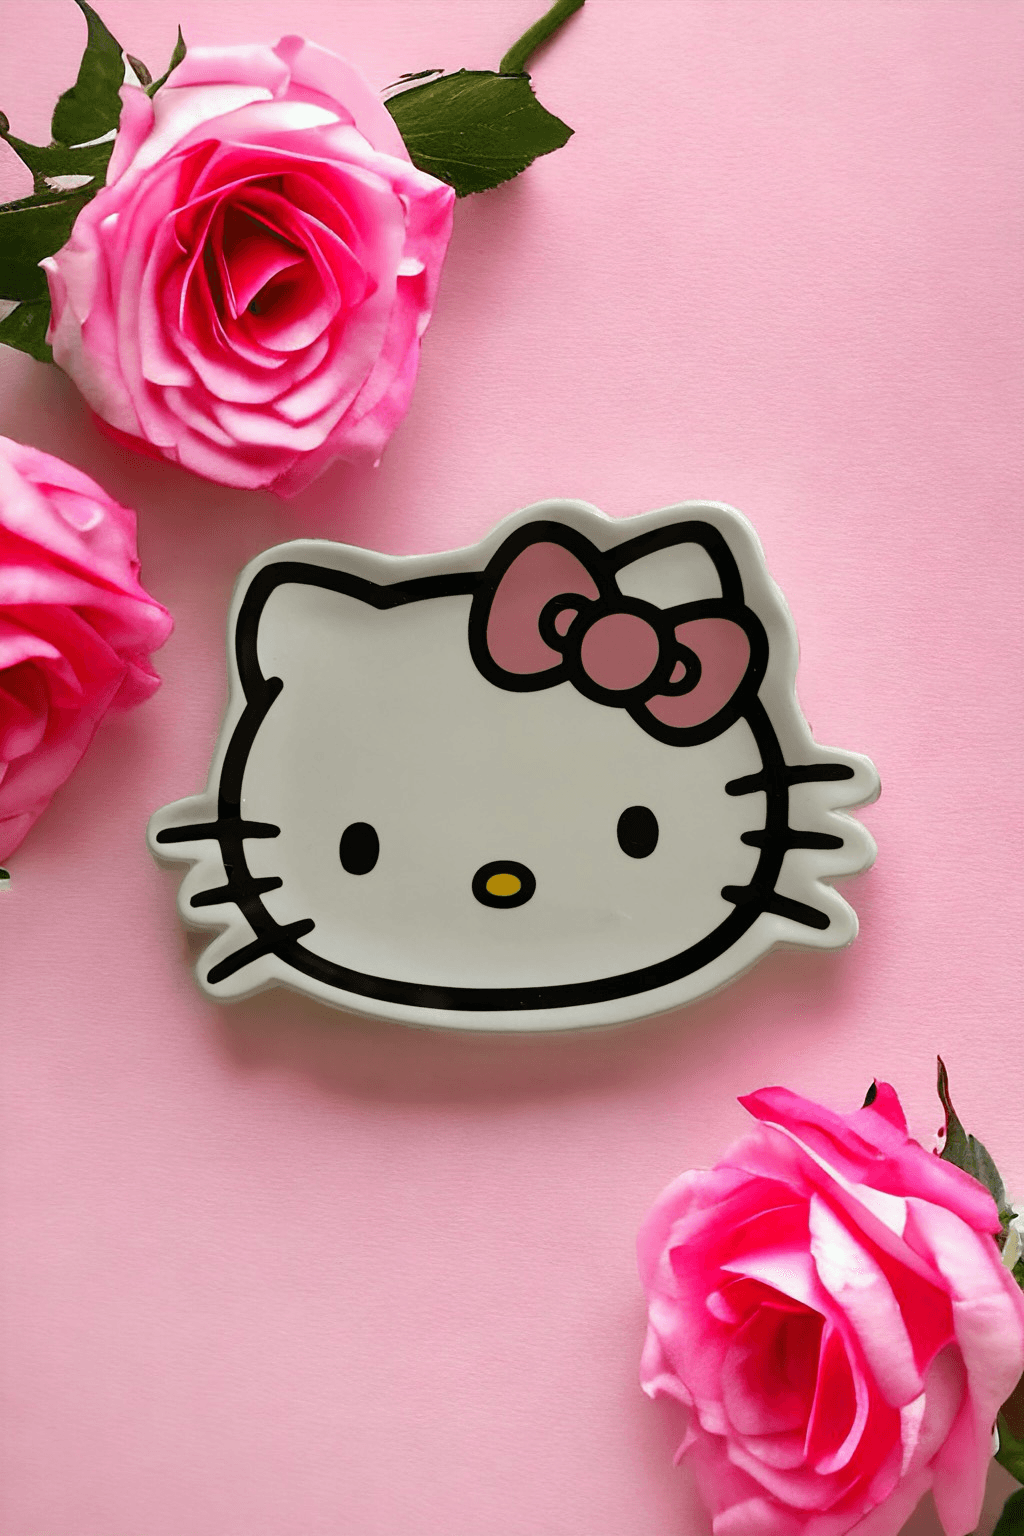 Hello Kitty Ceramic Trinket Tray Jewelry Ring Holder Dish Sanrio NEW w/ Tags! Hello Kitty